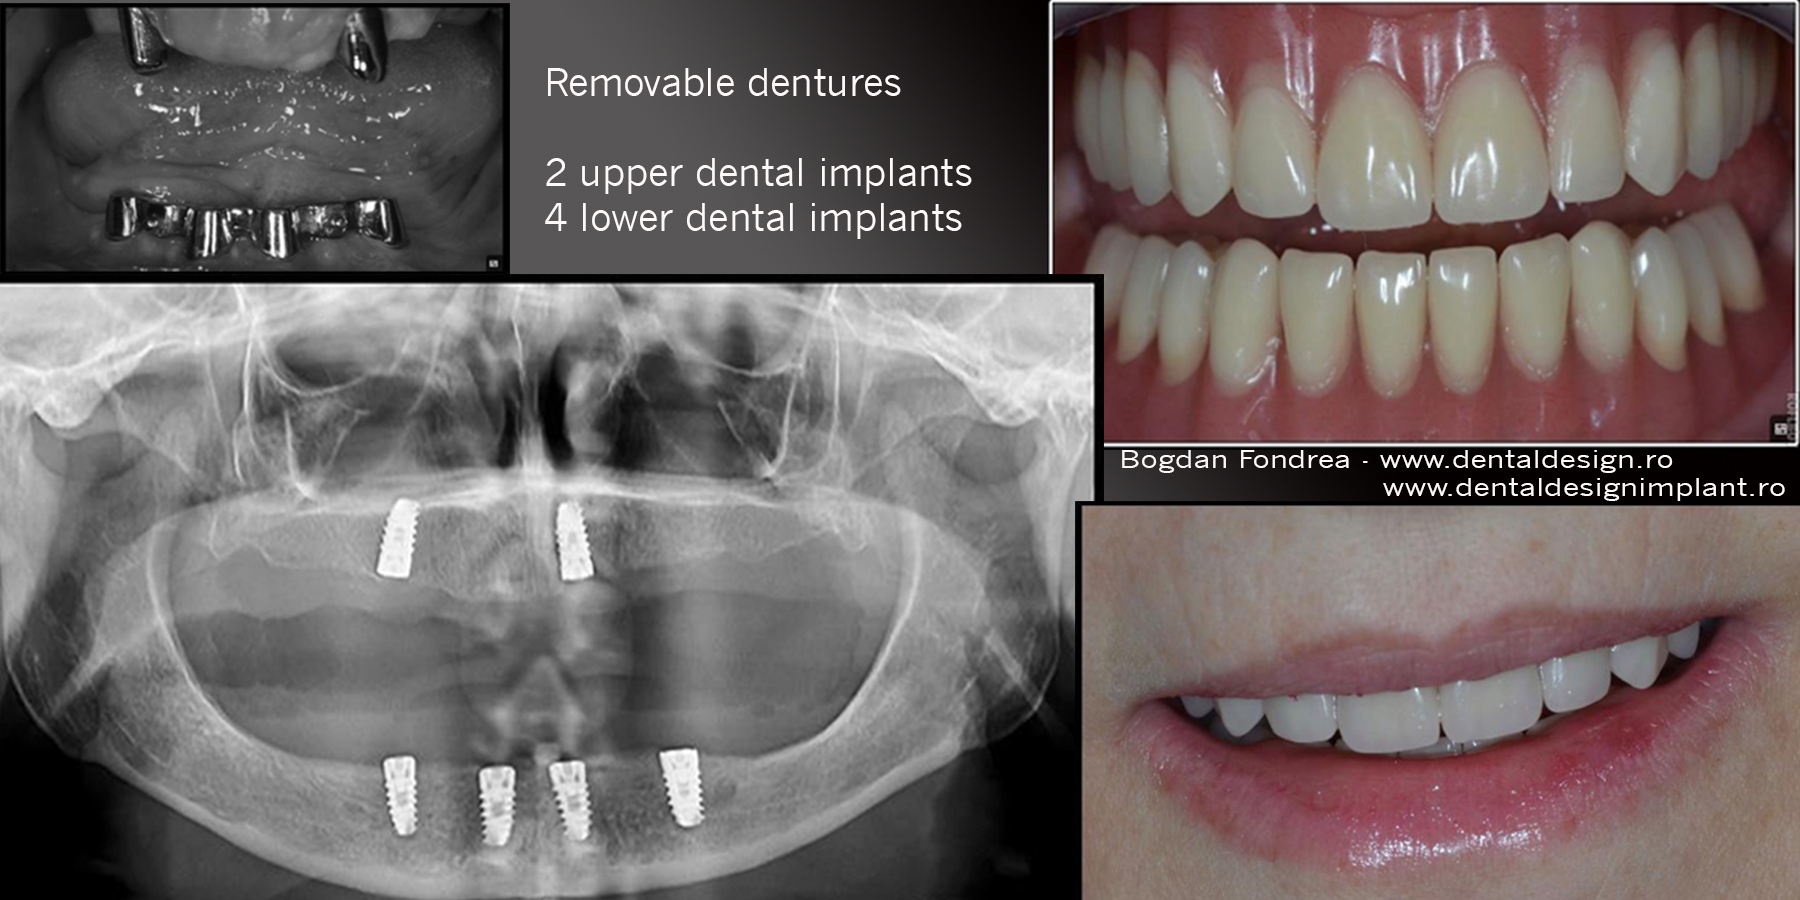 Clinica Dental Design Timisoara - pret implanturi dentare